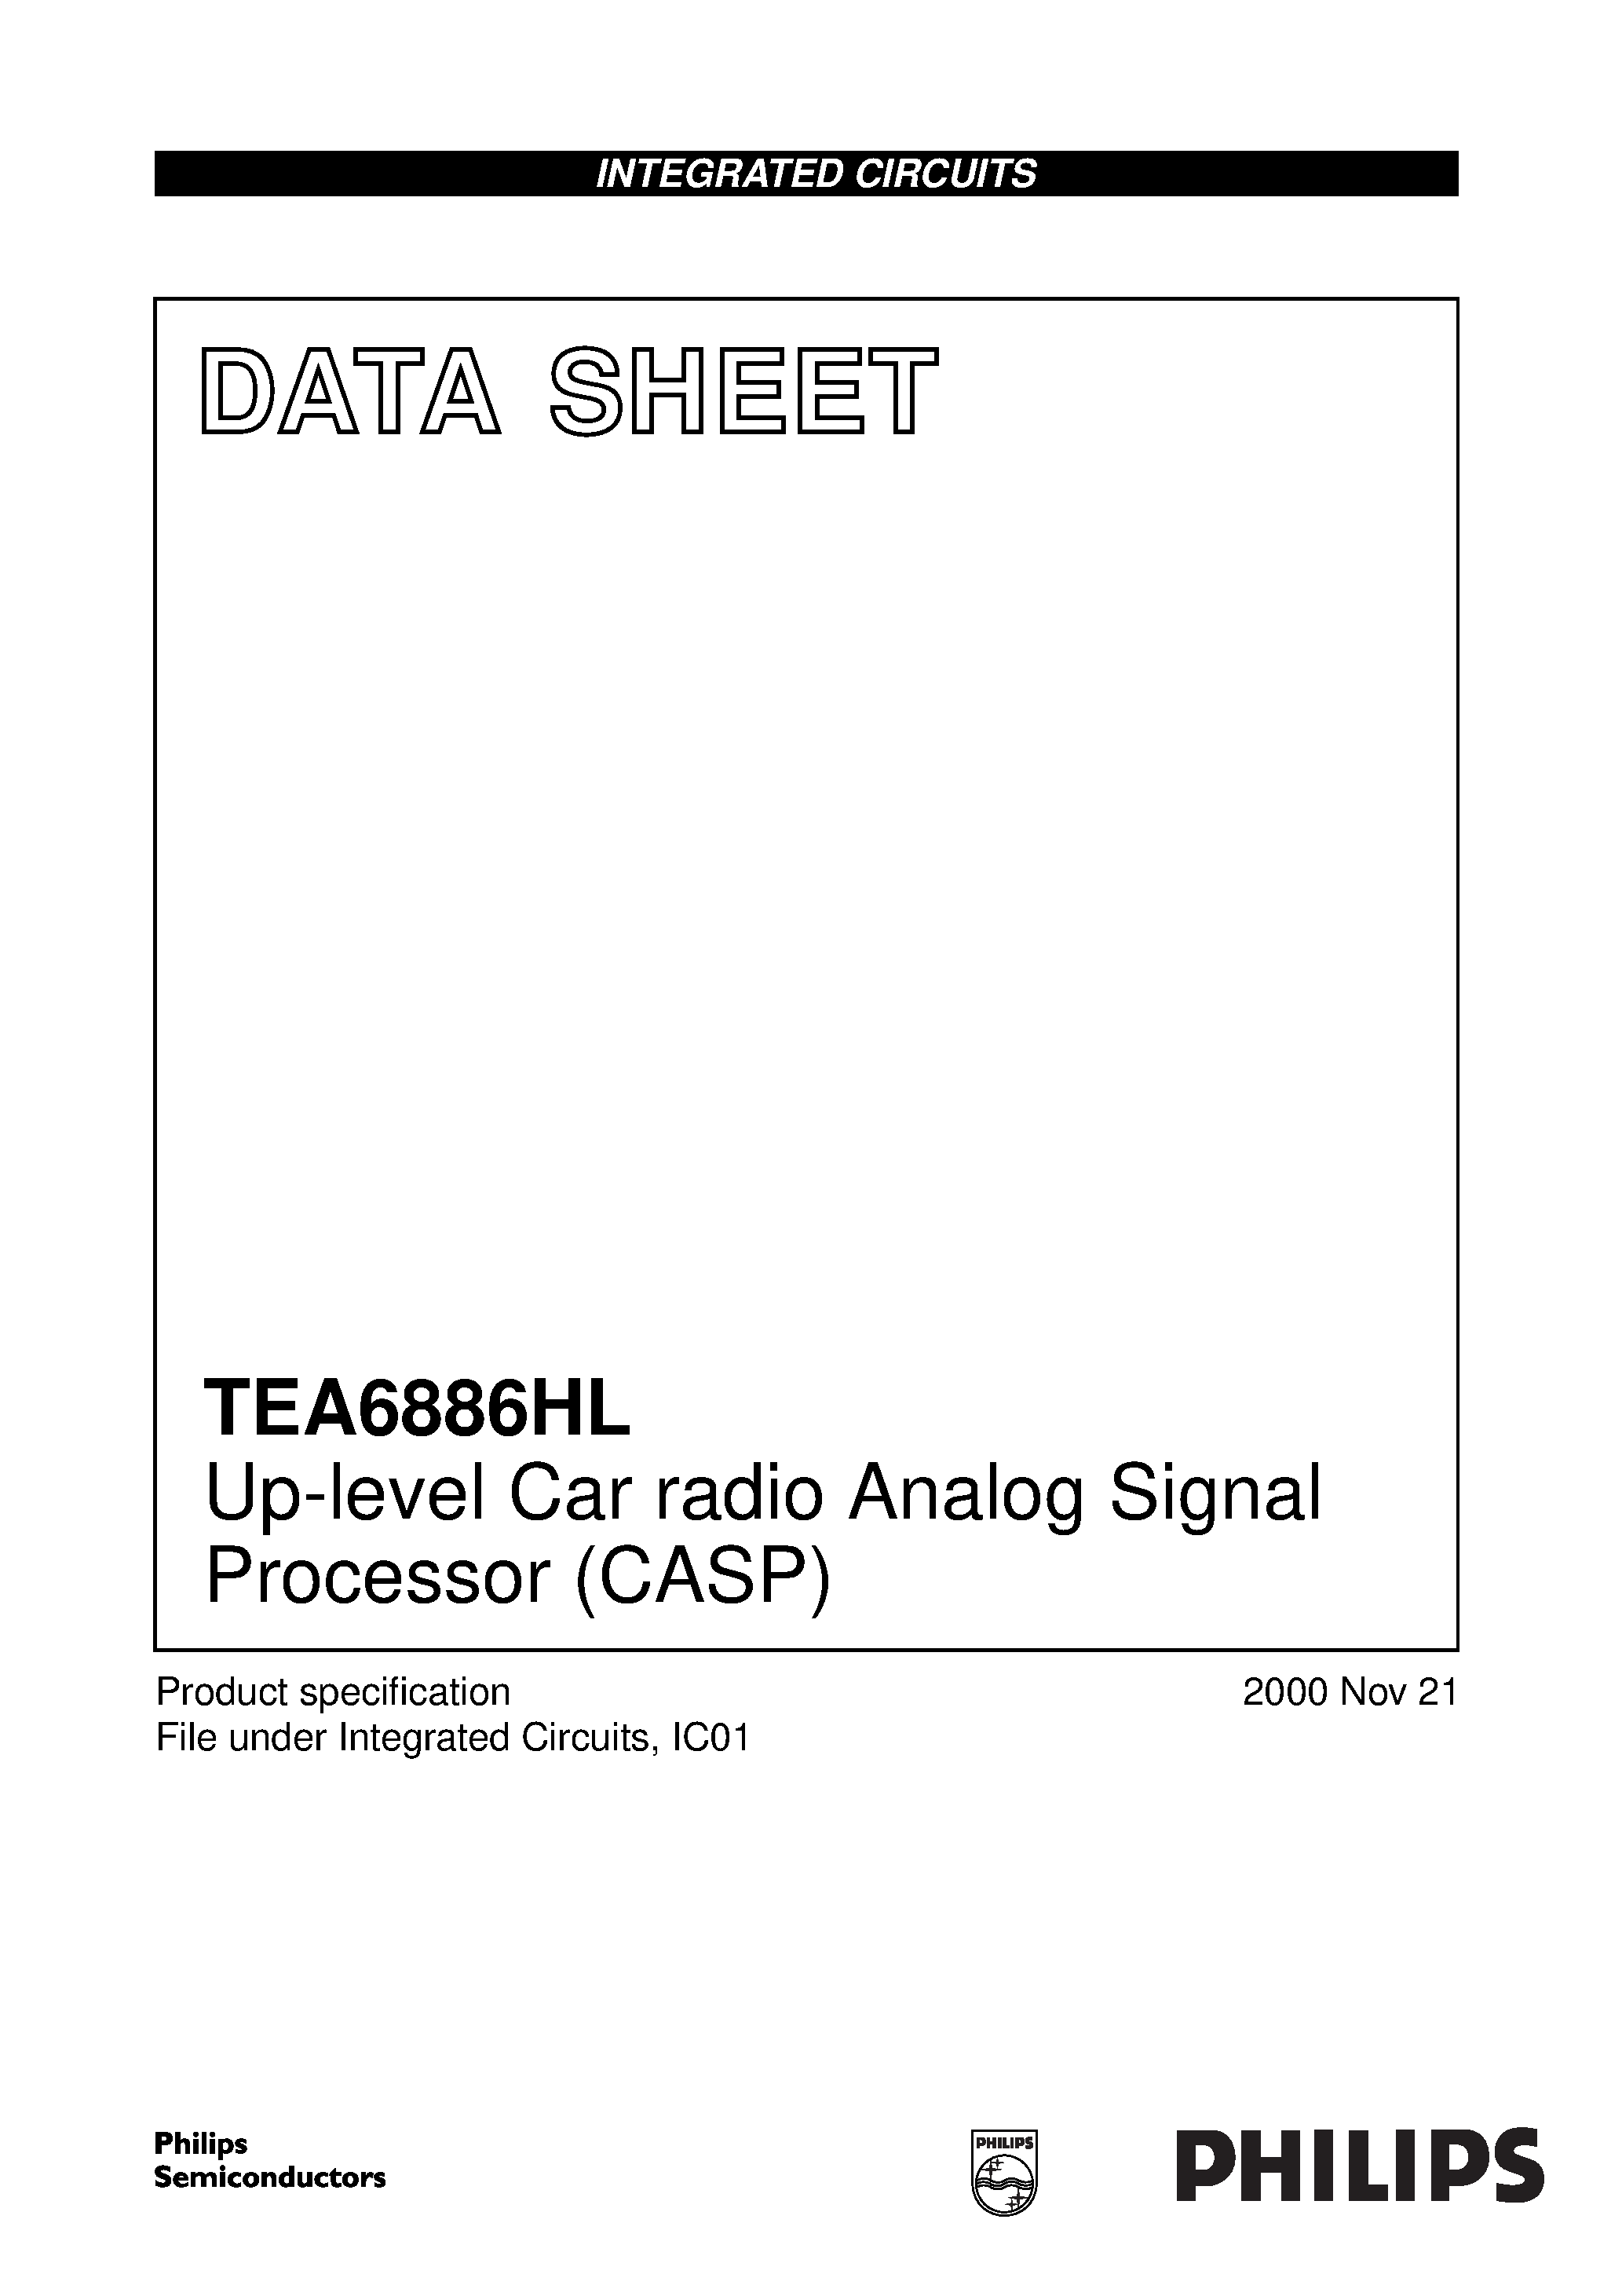 Даташит TEA6886 - Up-level Car radio Analog Signal Processor CASP страница 1